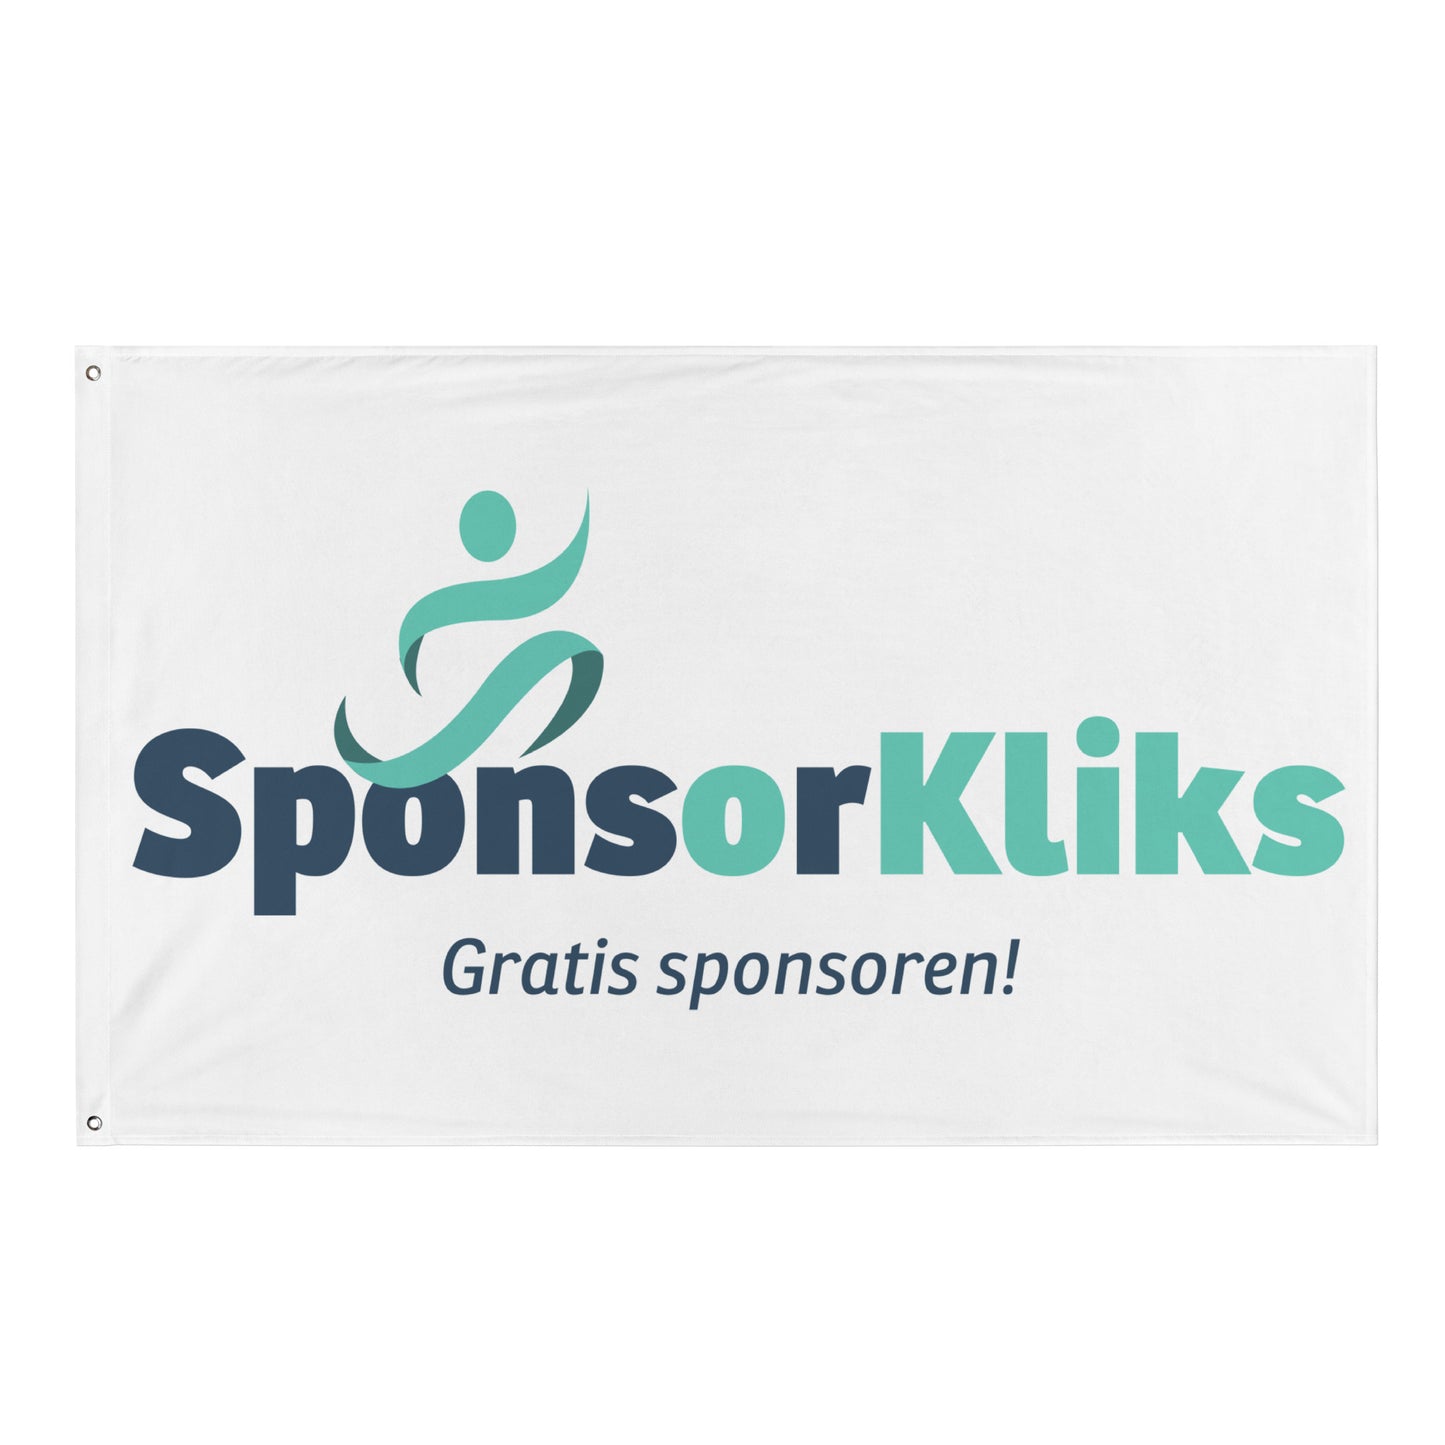 SponsorKliks Spandoek / Vlag 155 x 97 cm